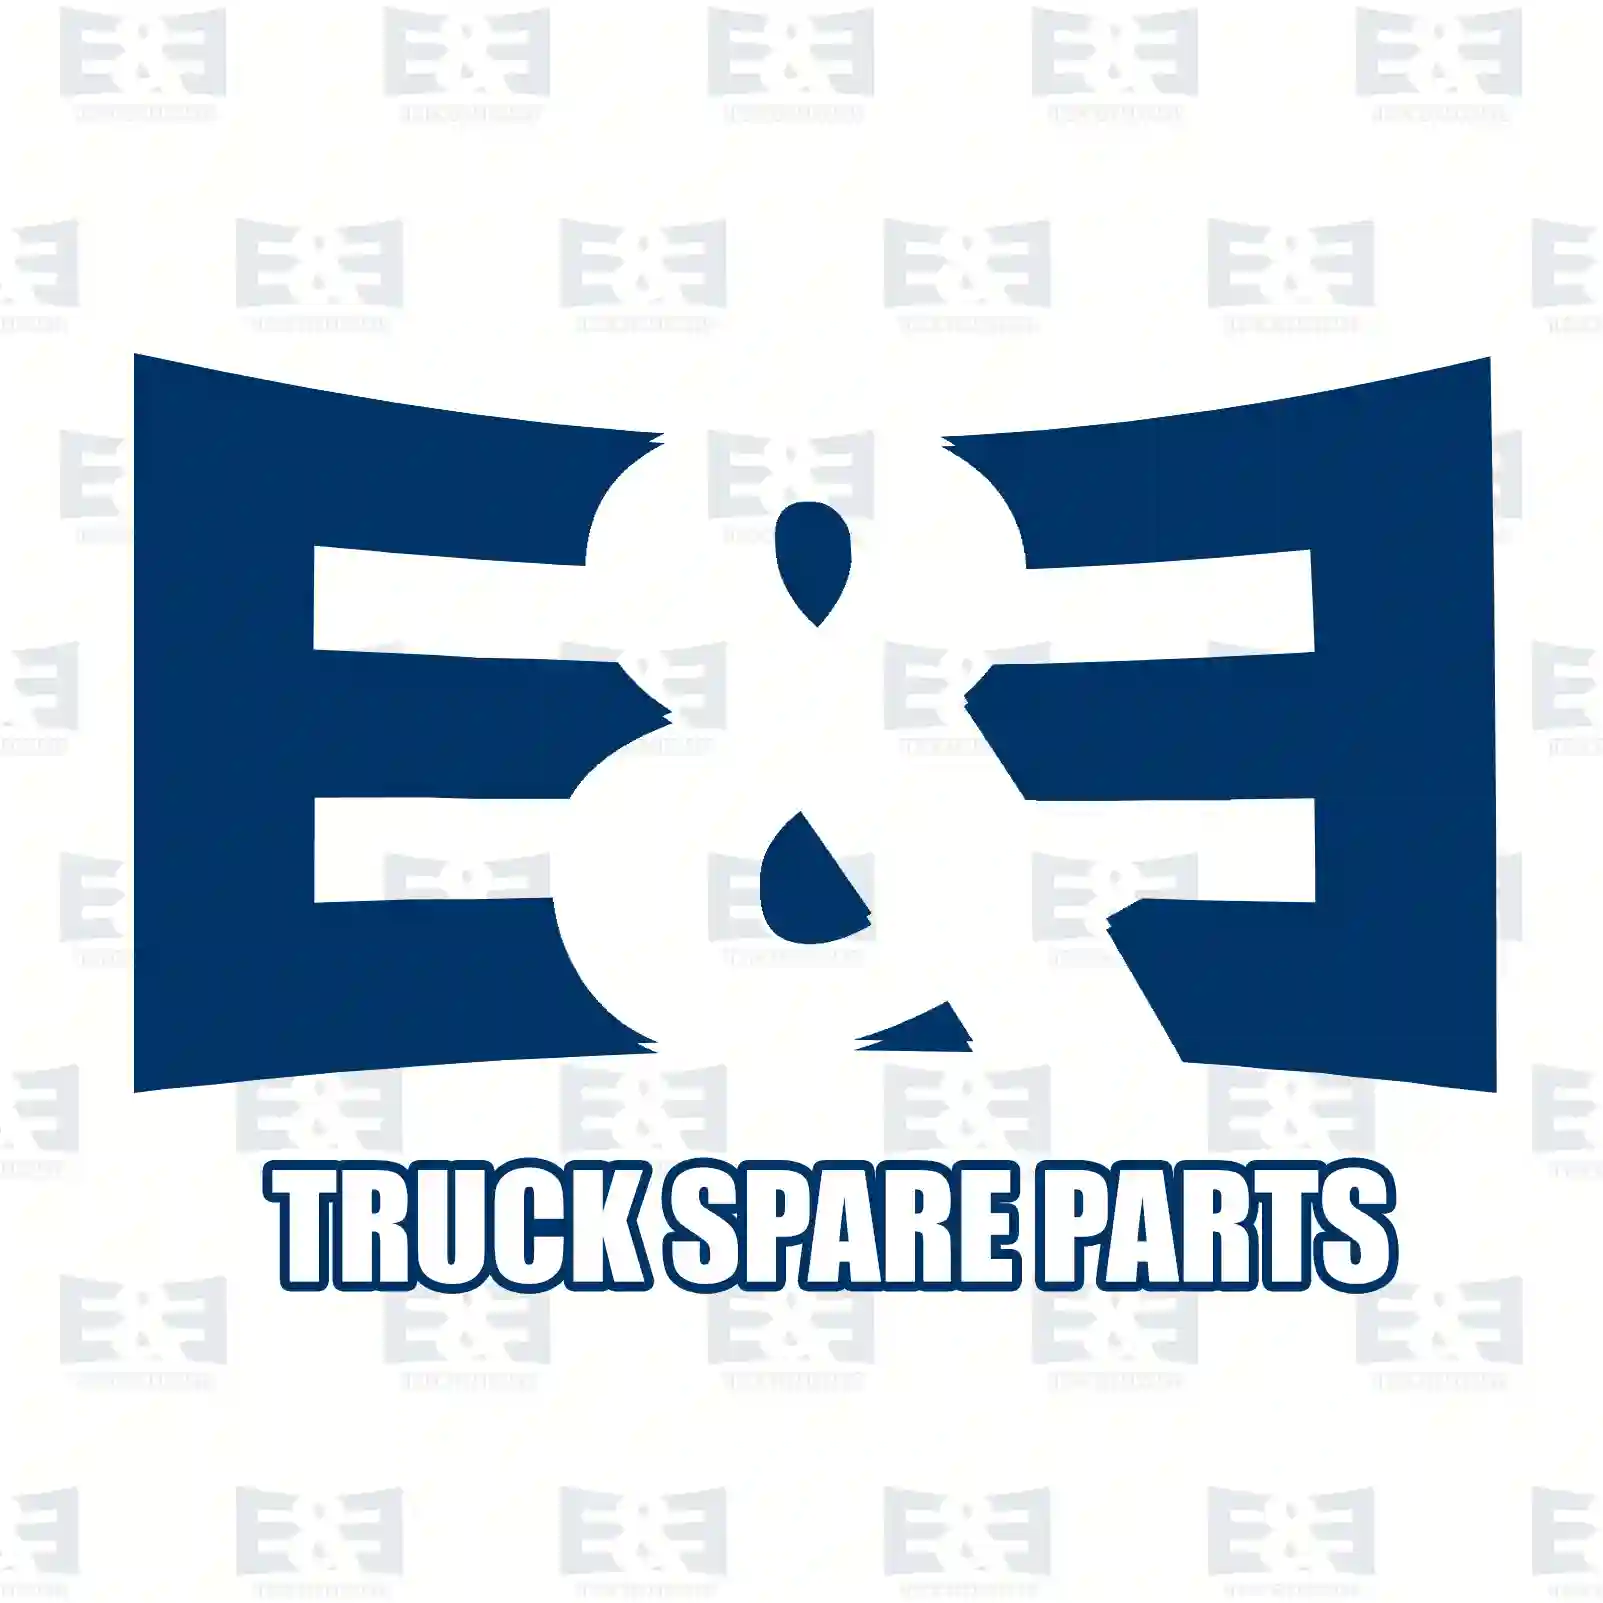 Brake drum, 2E2295768, 6174230101, , , , , , , ||  2E2295768 E&E Truck Spare Parts | Truck Spare Parts, Auotomotive Spare Parts Brake drum, 2E2295768, 6174230101, , , , , , , ||  2E2295768 E&E Truck Spare Parts | Truck Spare Parts, Auotomotive Spare Parts